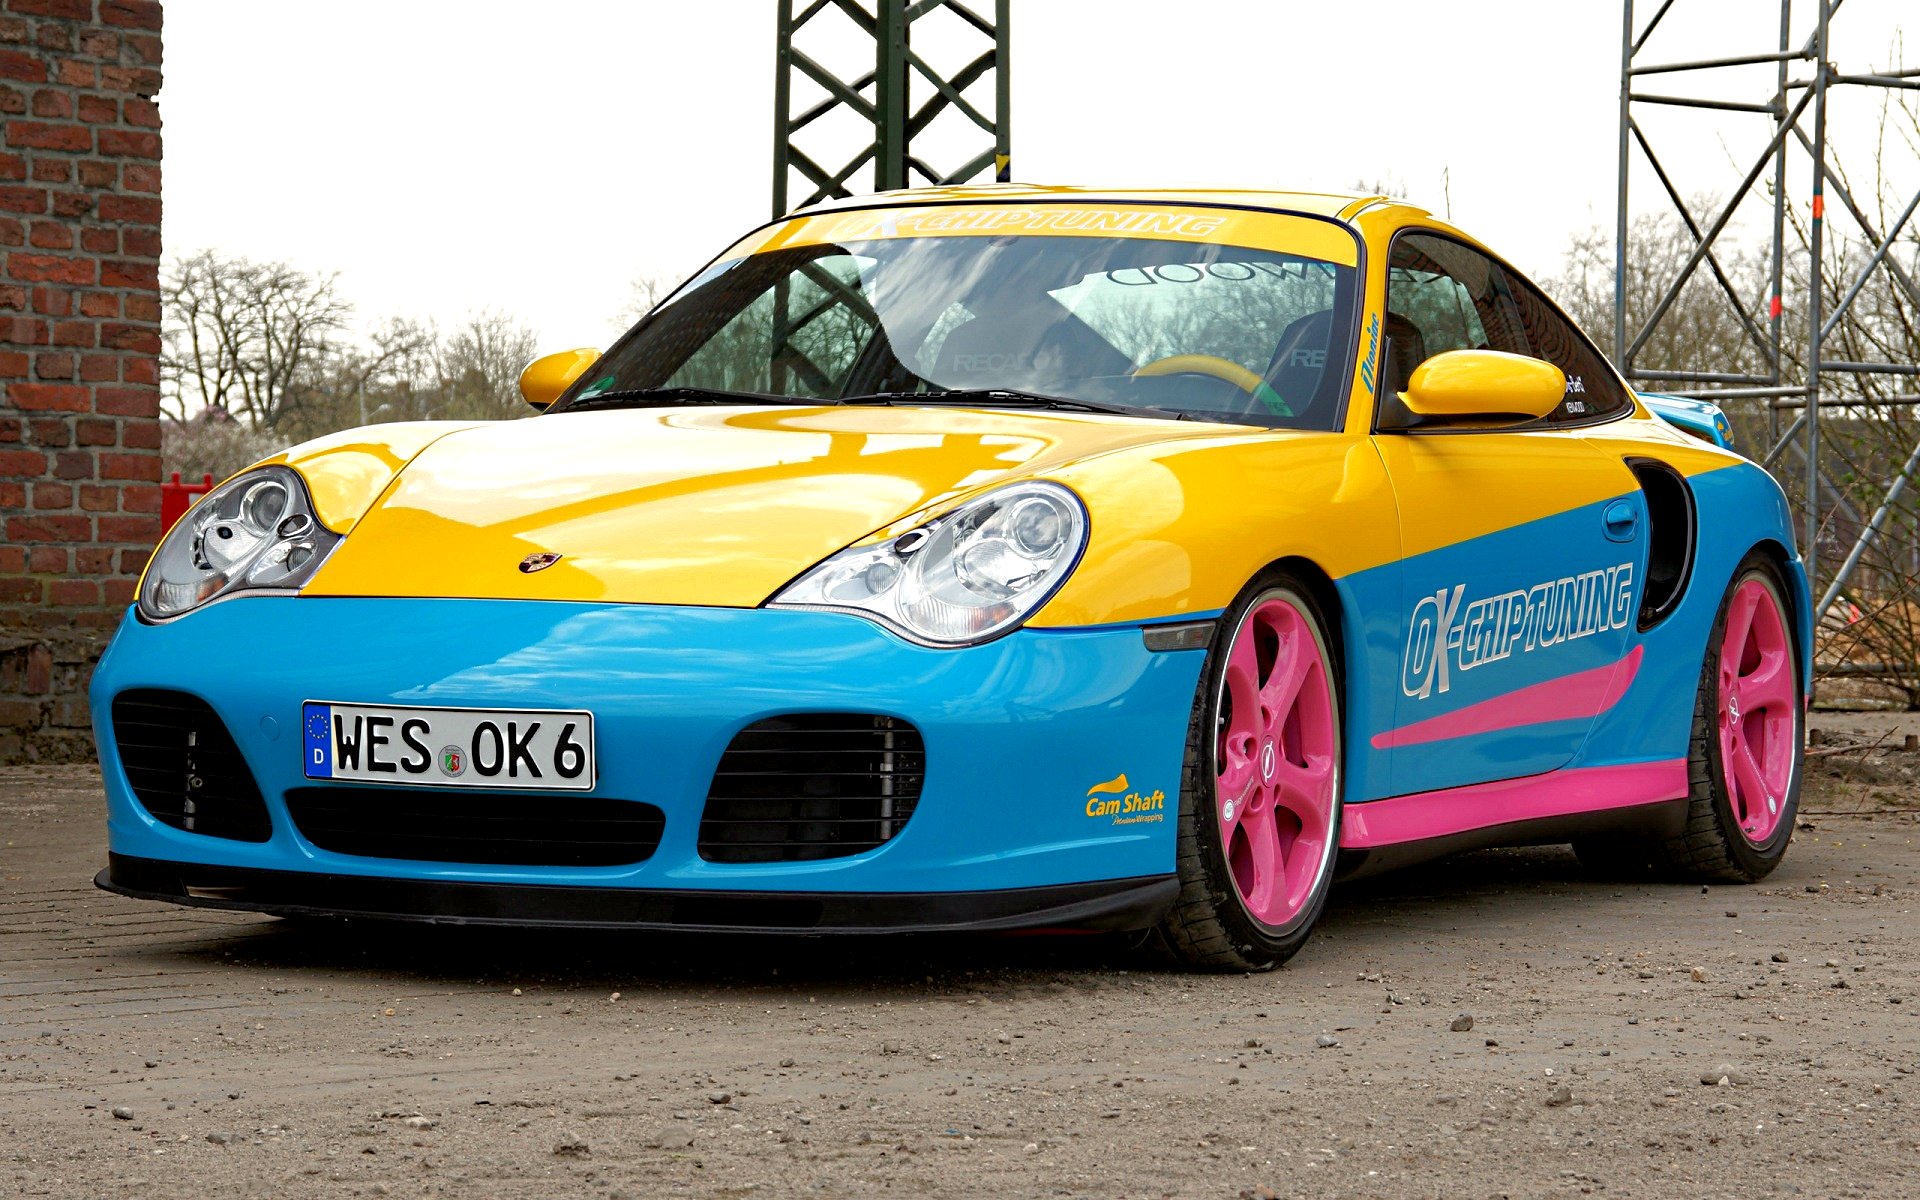 Télécharger des fonds d'écran Porsche 996 HD